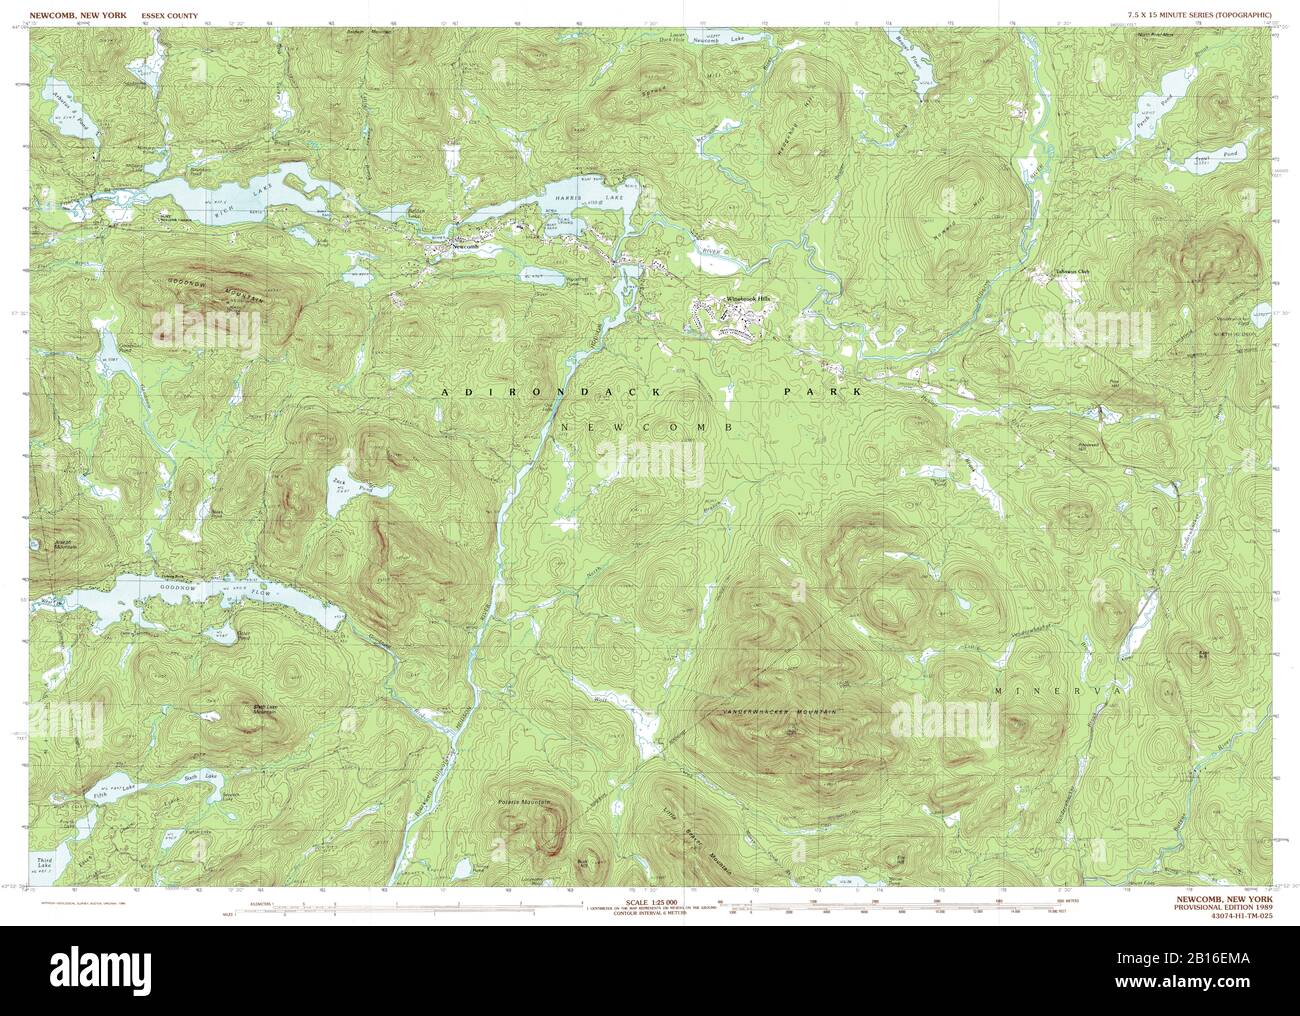 Vue très détaillée de la carte topographique de 1989 pour Newcomb, NY Banque D'Images